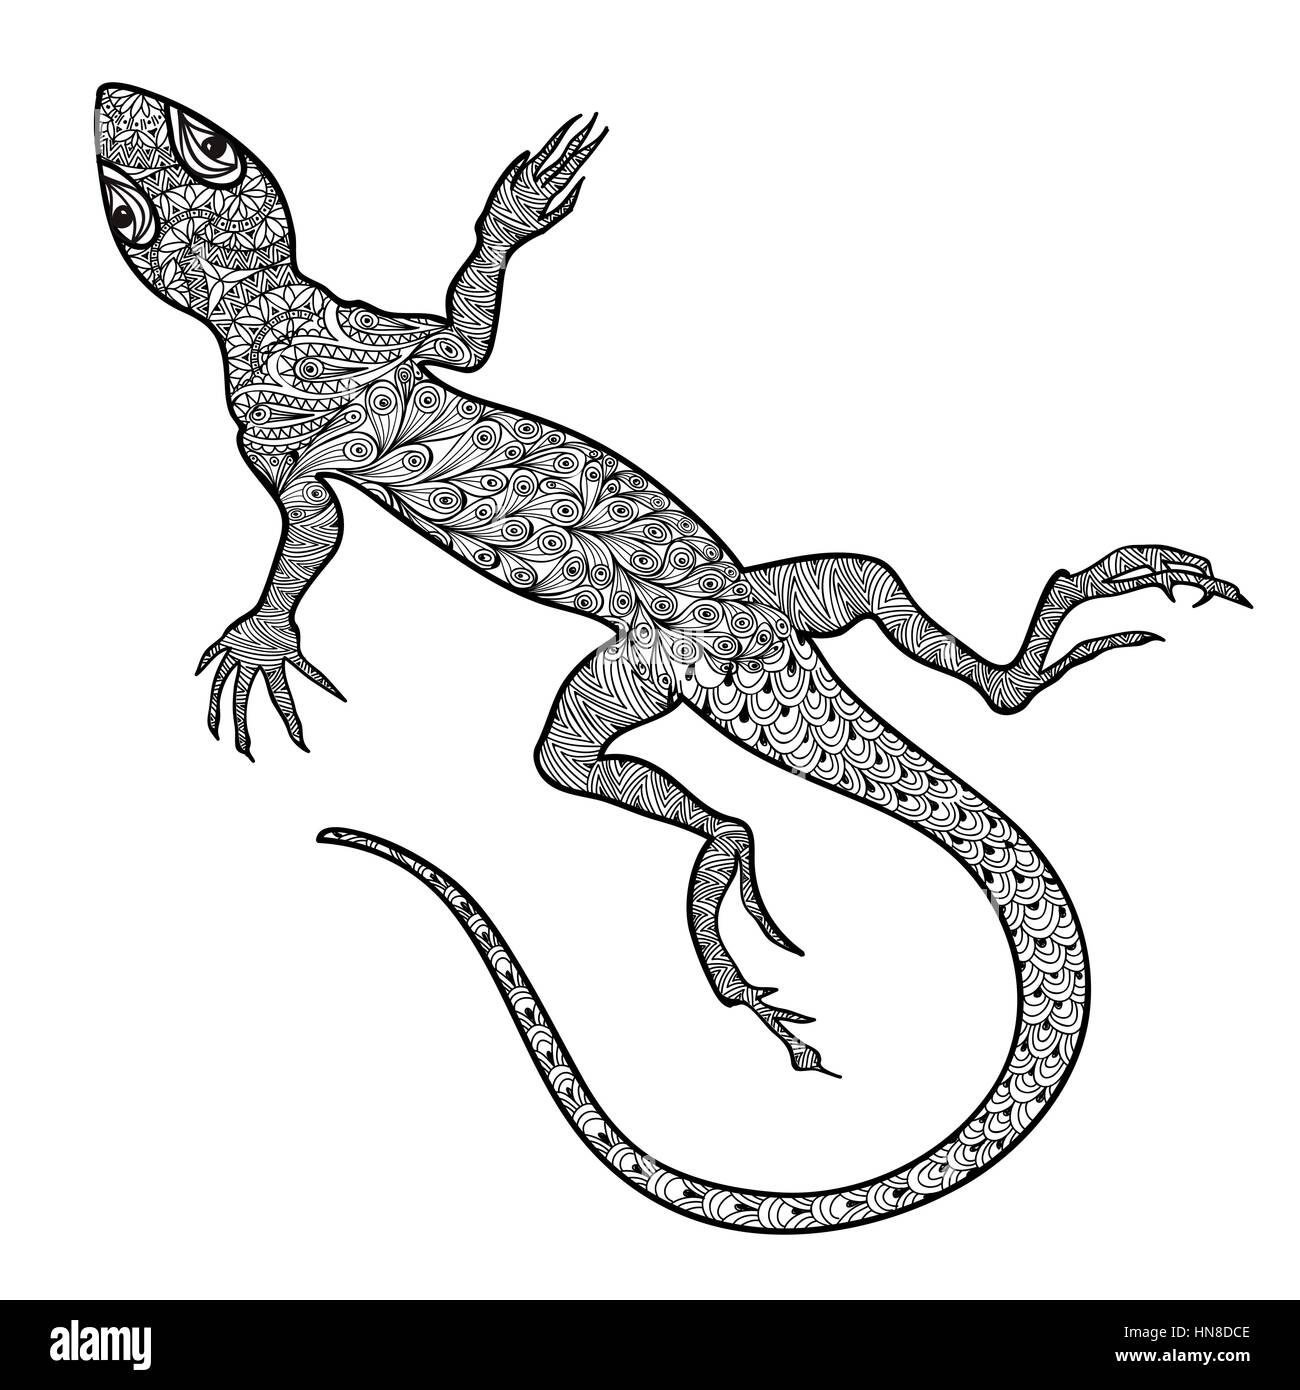 Lizard isolés. hand drawn vector avec salamandre tribal ethnique motif ornemental. zentagle croquis de lézards reptiles avec de longues queues courbées Illustration de Vecteur